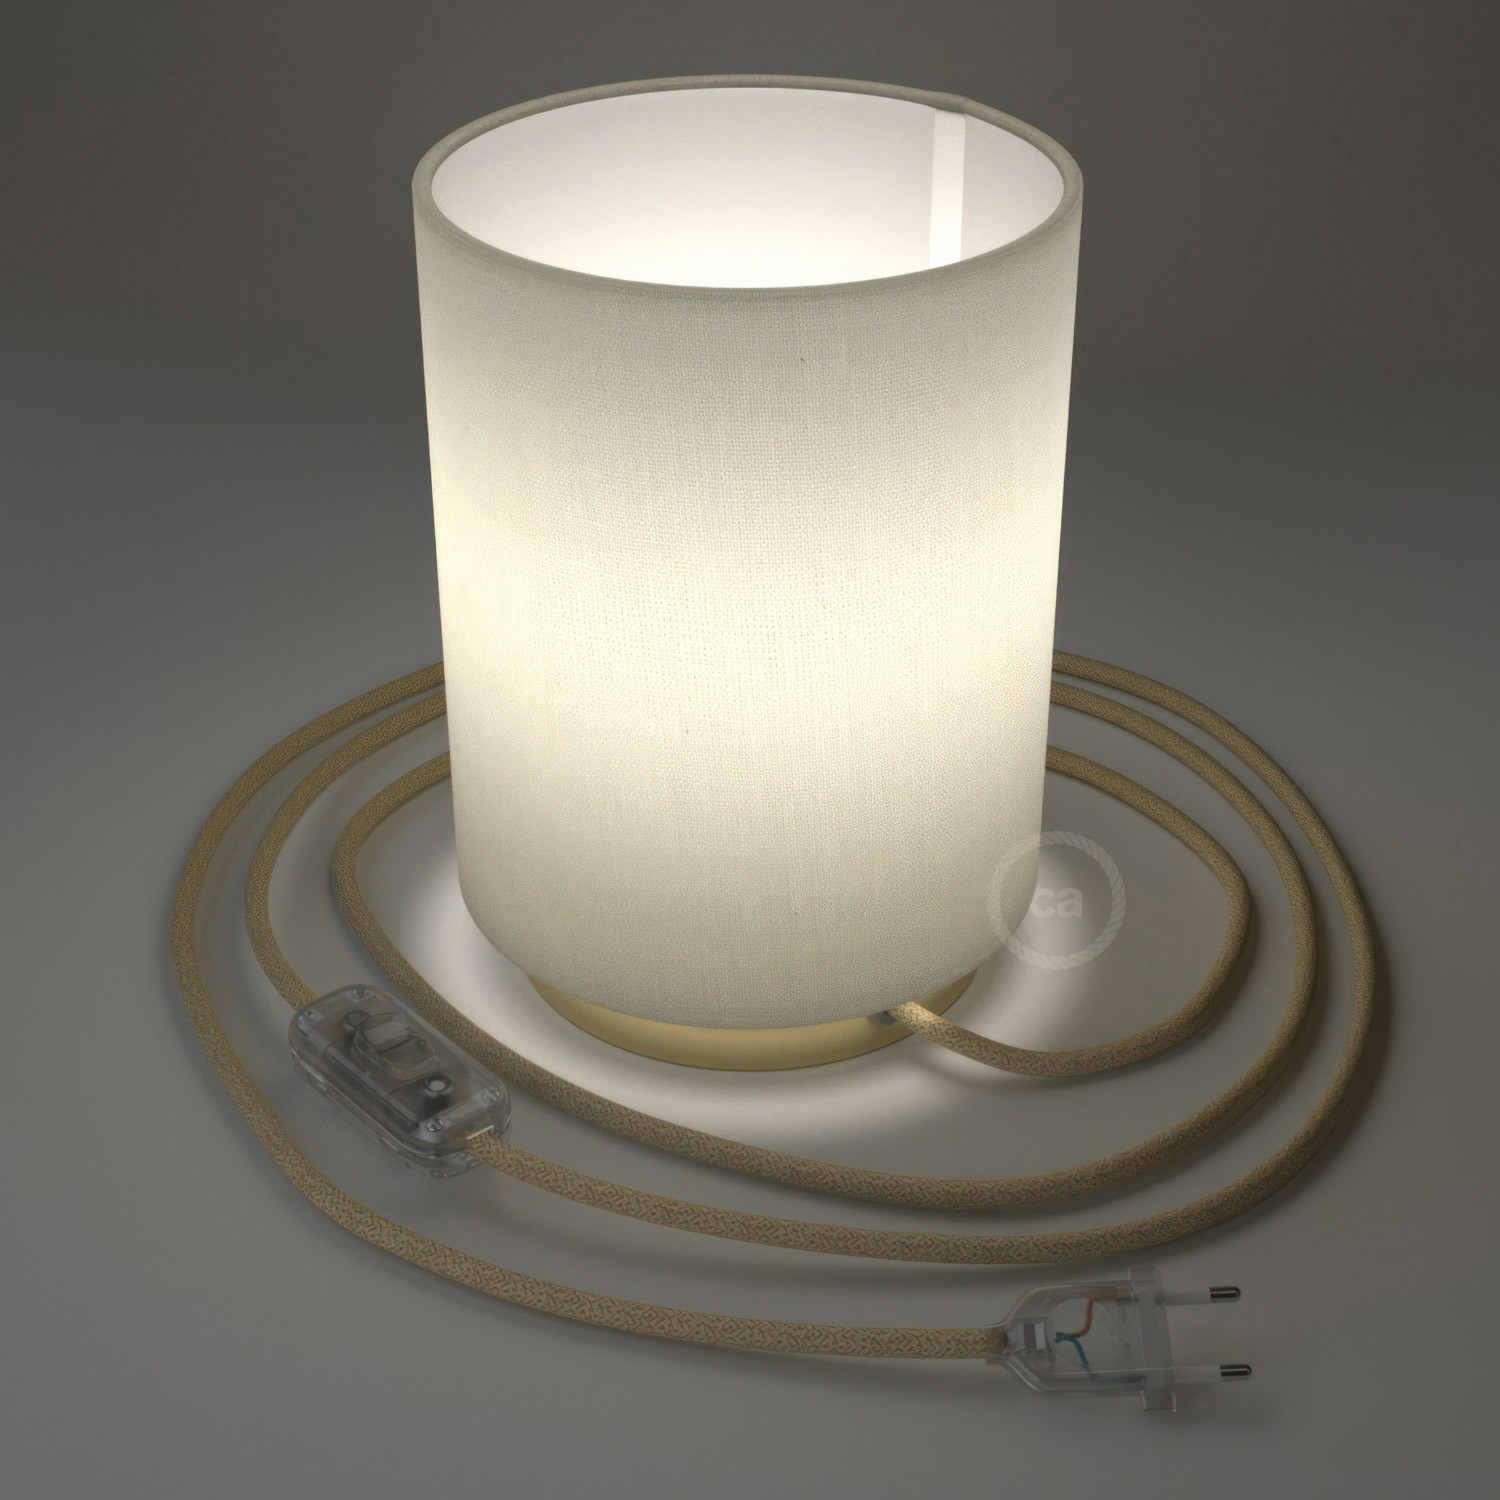 Lampe Posaluce en métal avec abat-jour Cilindro Linone Blanc, avec câble textile, interrupteur et prise bipolaire